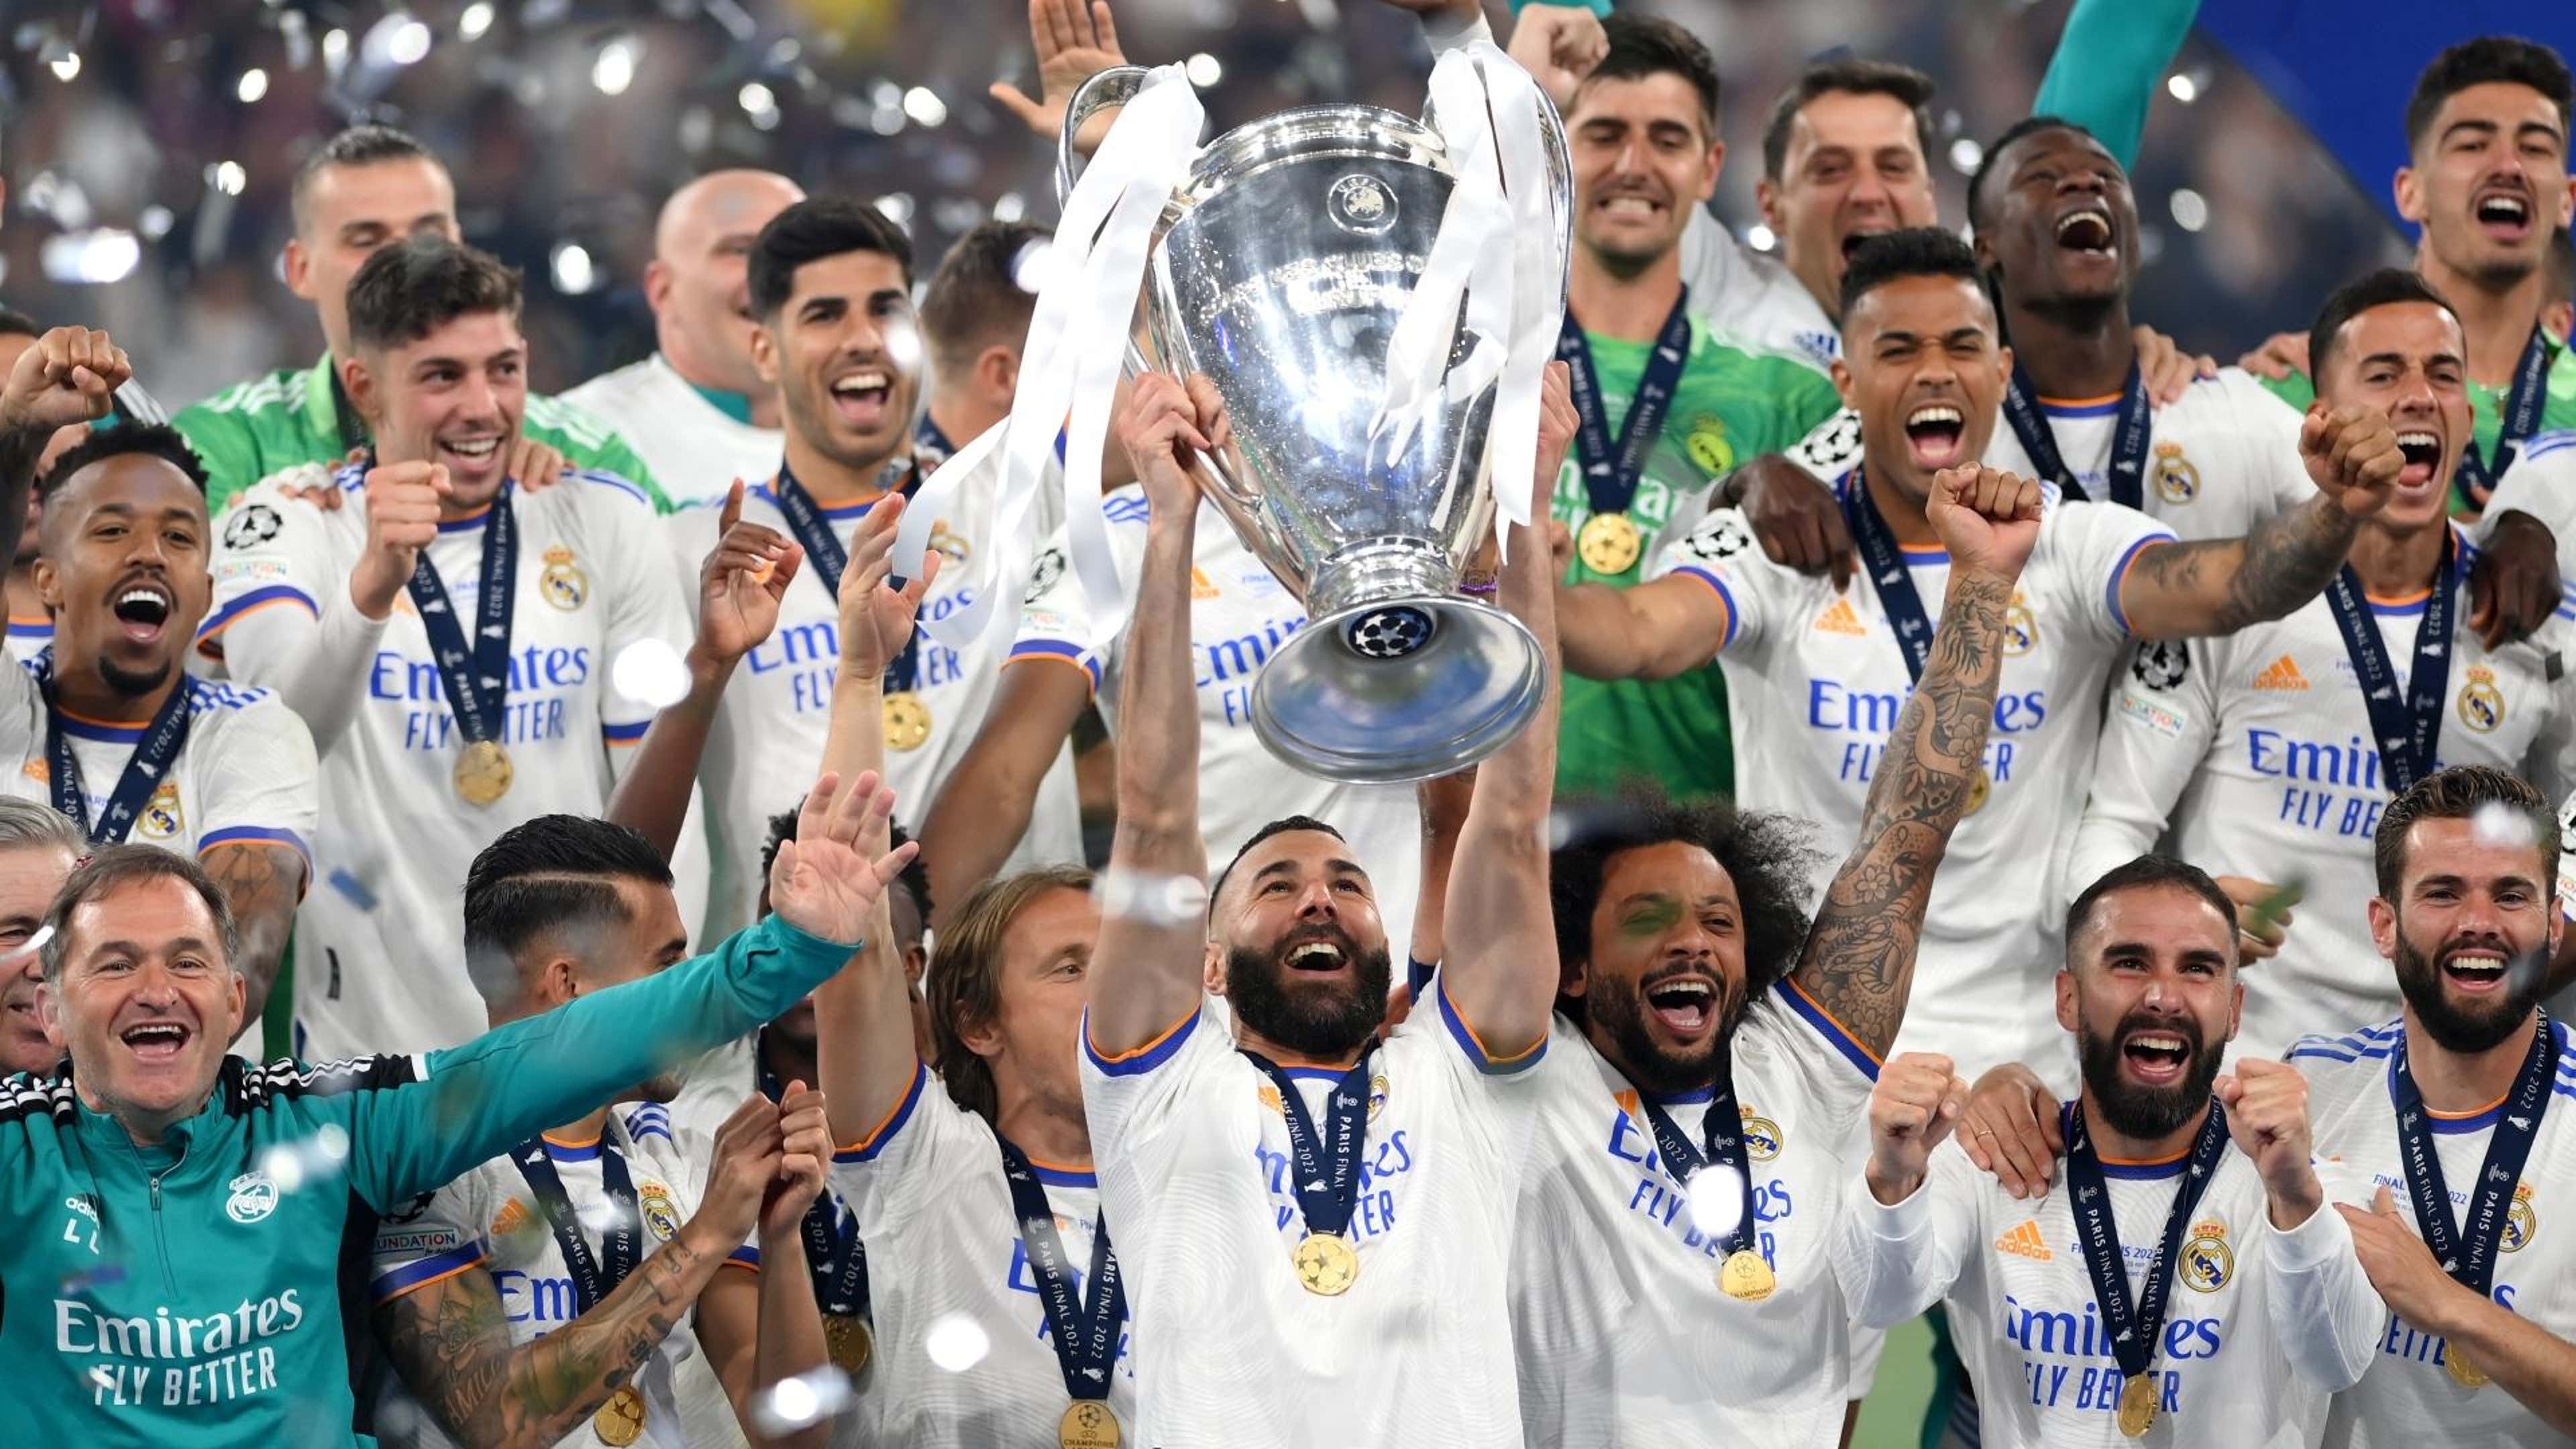 Finais da Champions League (até 2018)  Champions league, Uefa champions  league, Champions league final